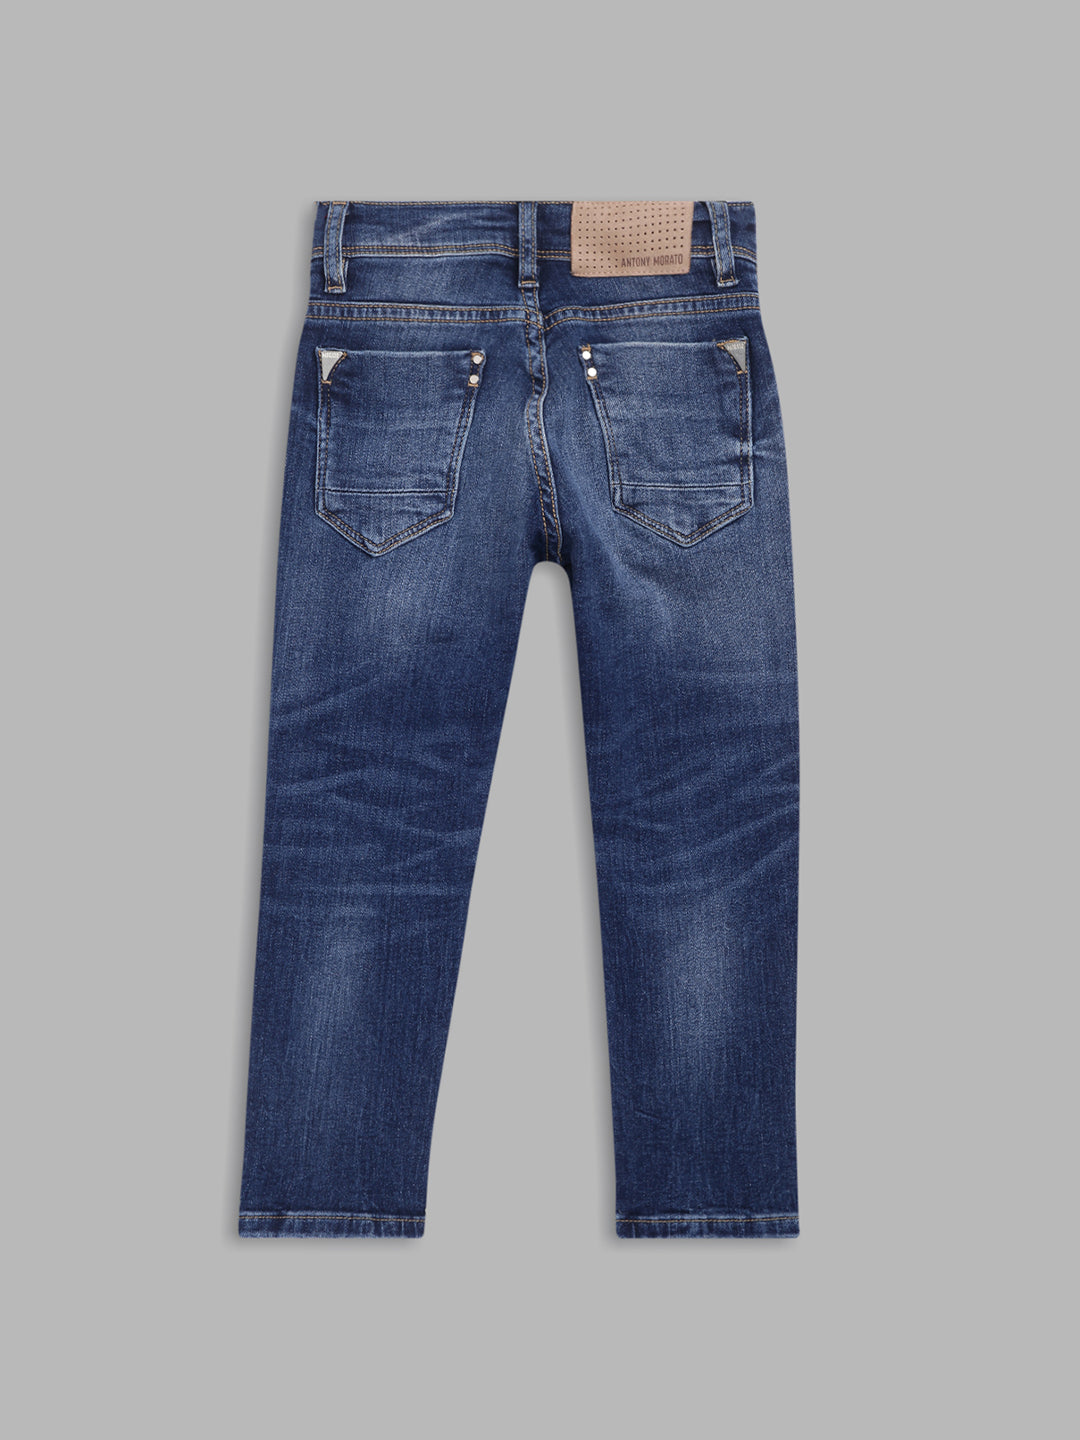 Antony Morato Boys Blue Skinny Fit Heavy Fade Jeans